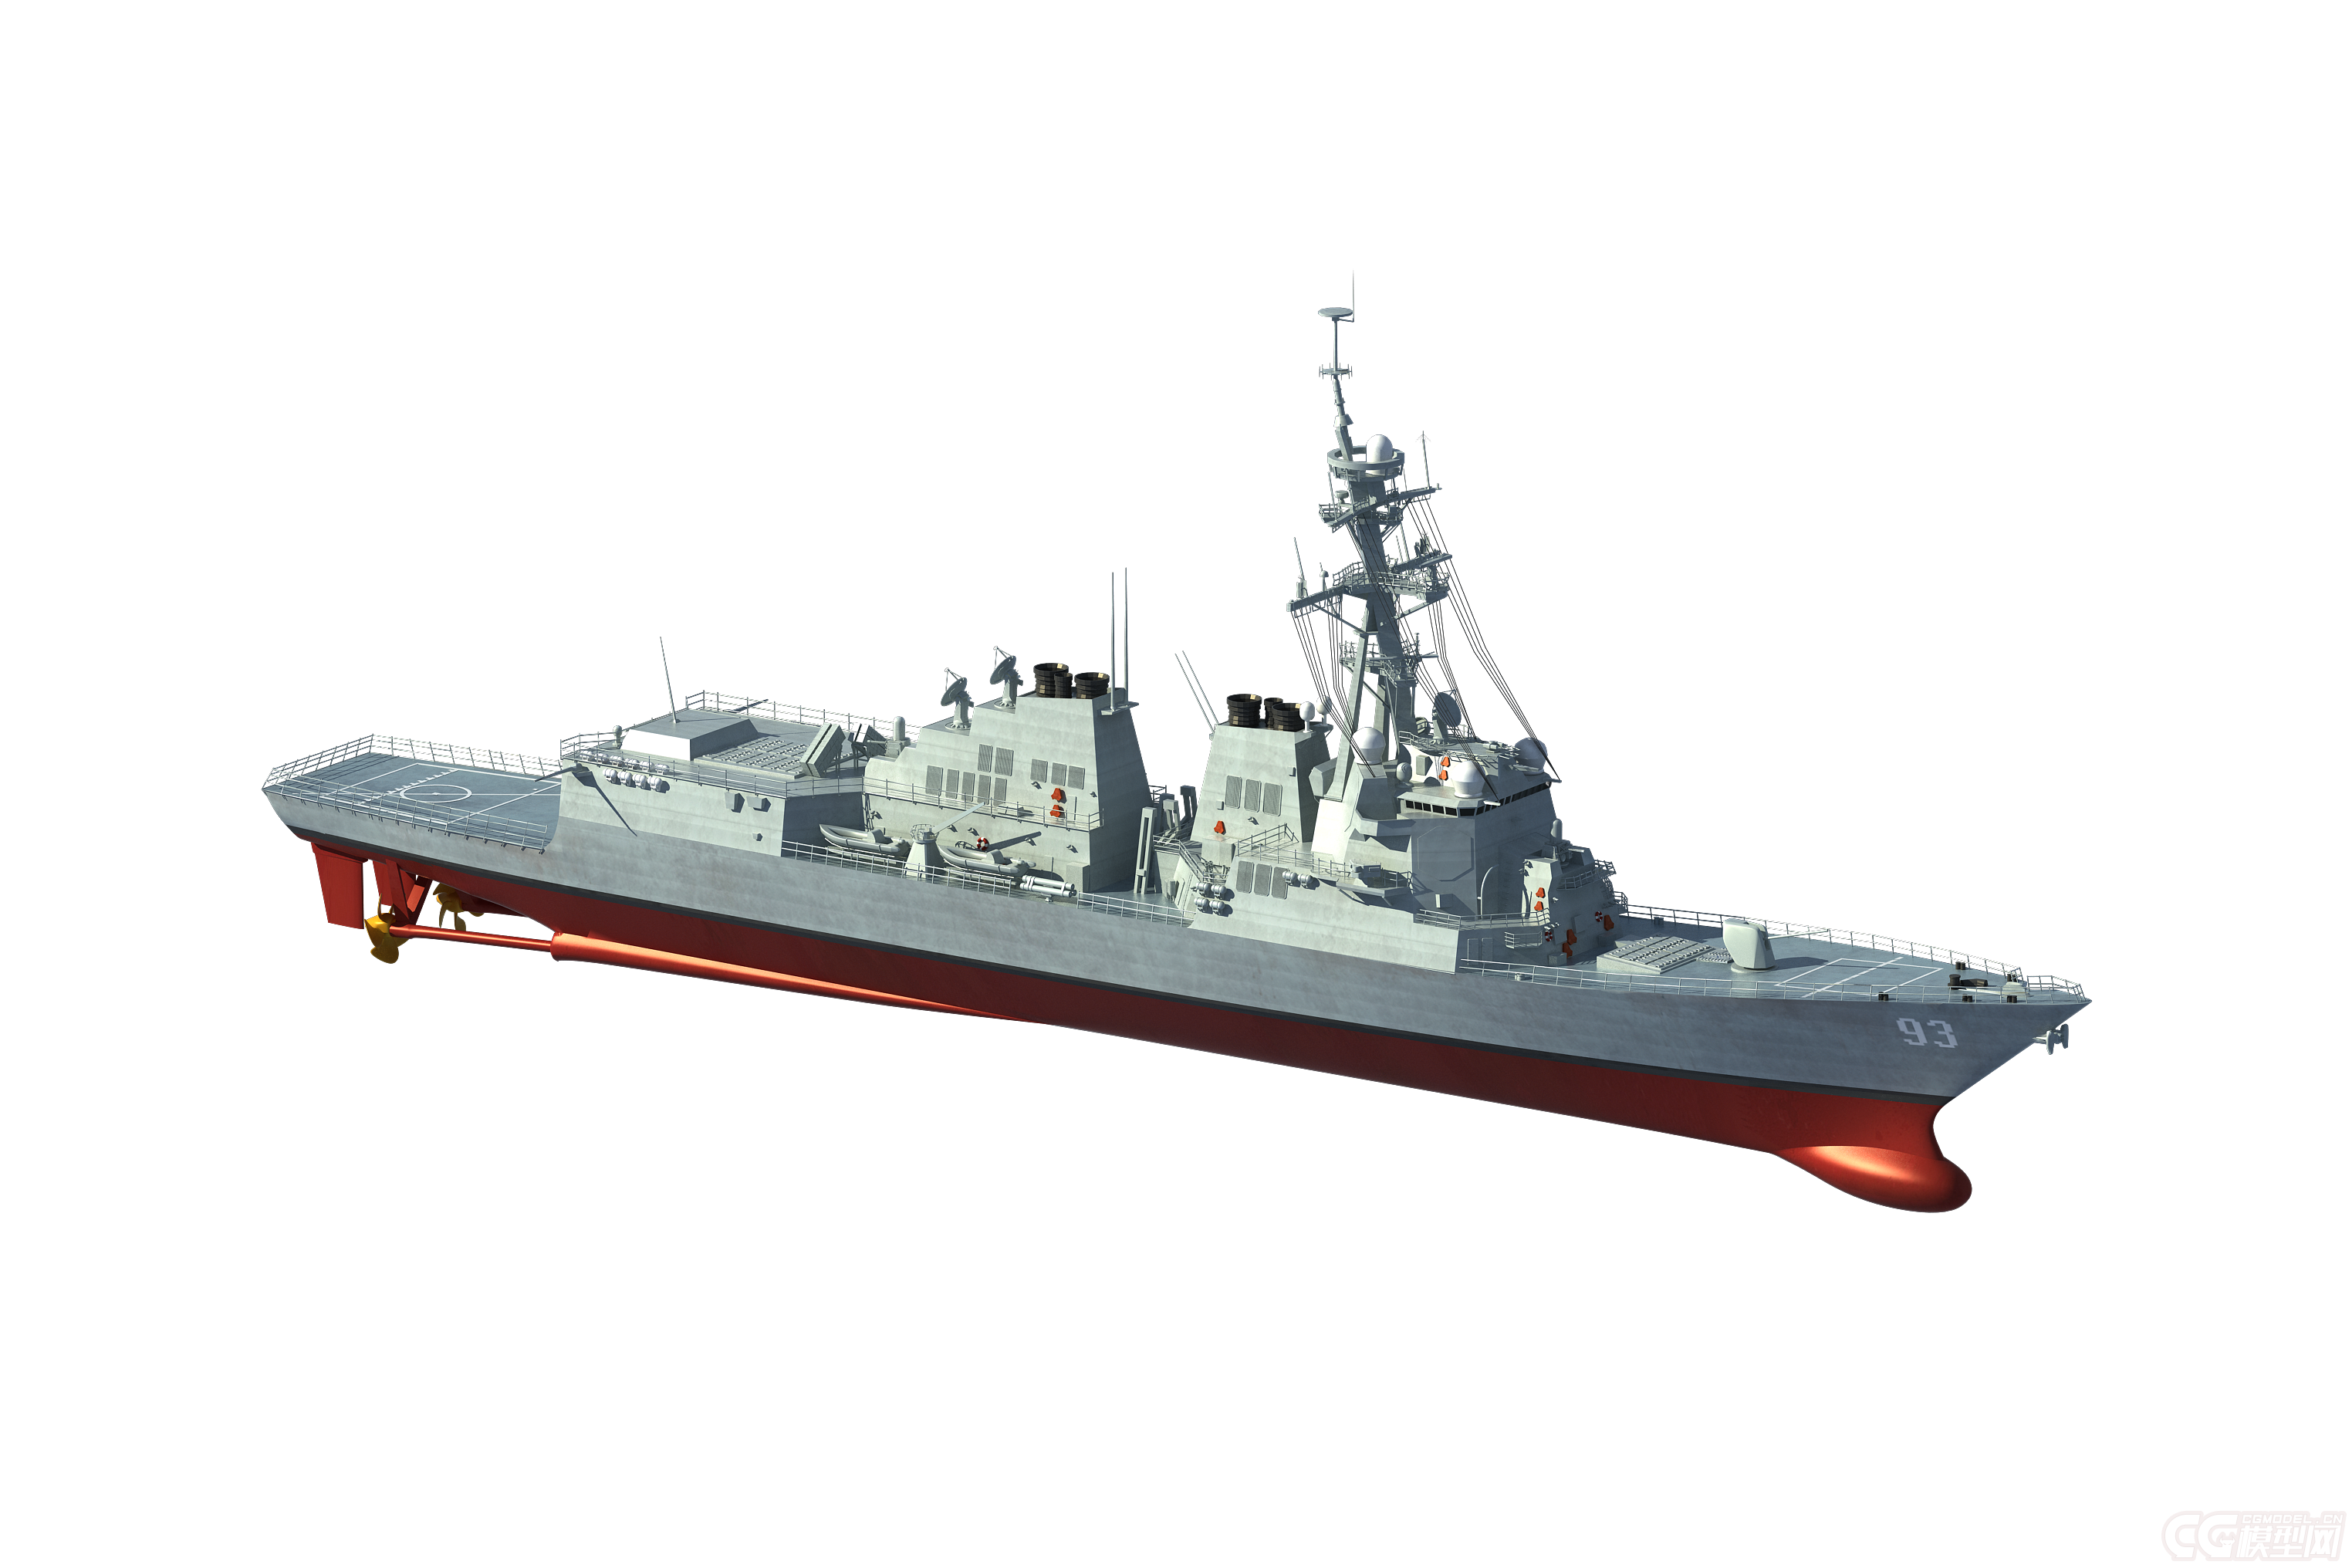 阿利·伯克级驱逐舰-军舰-船艇-mr. 傻瓜-cg模型网